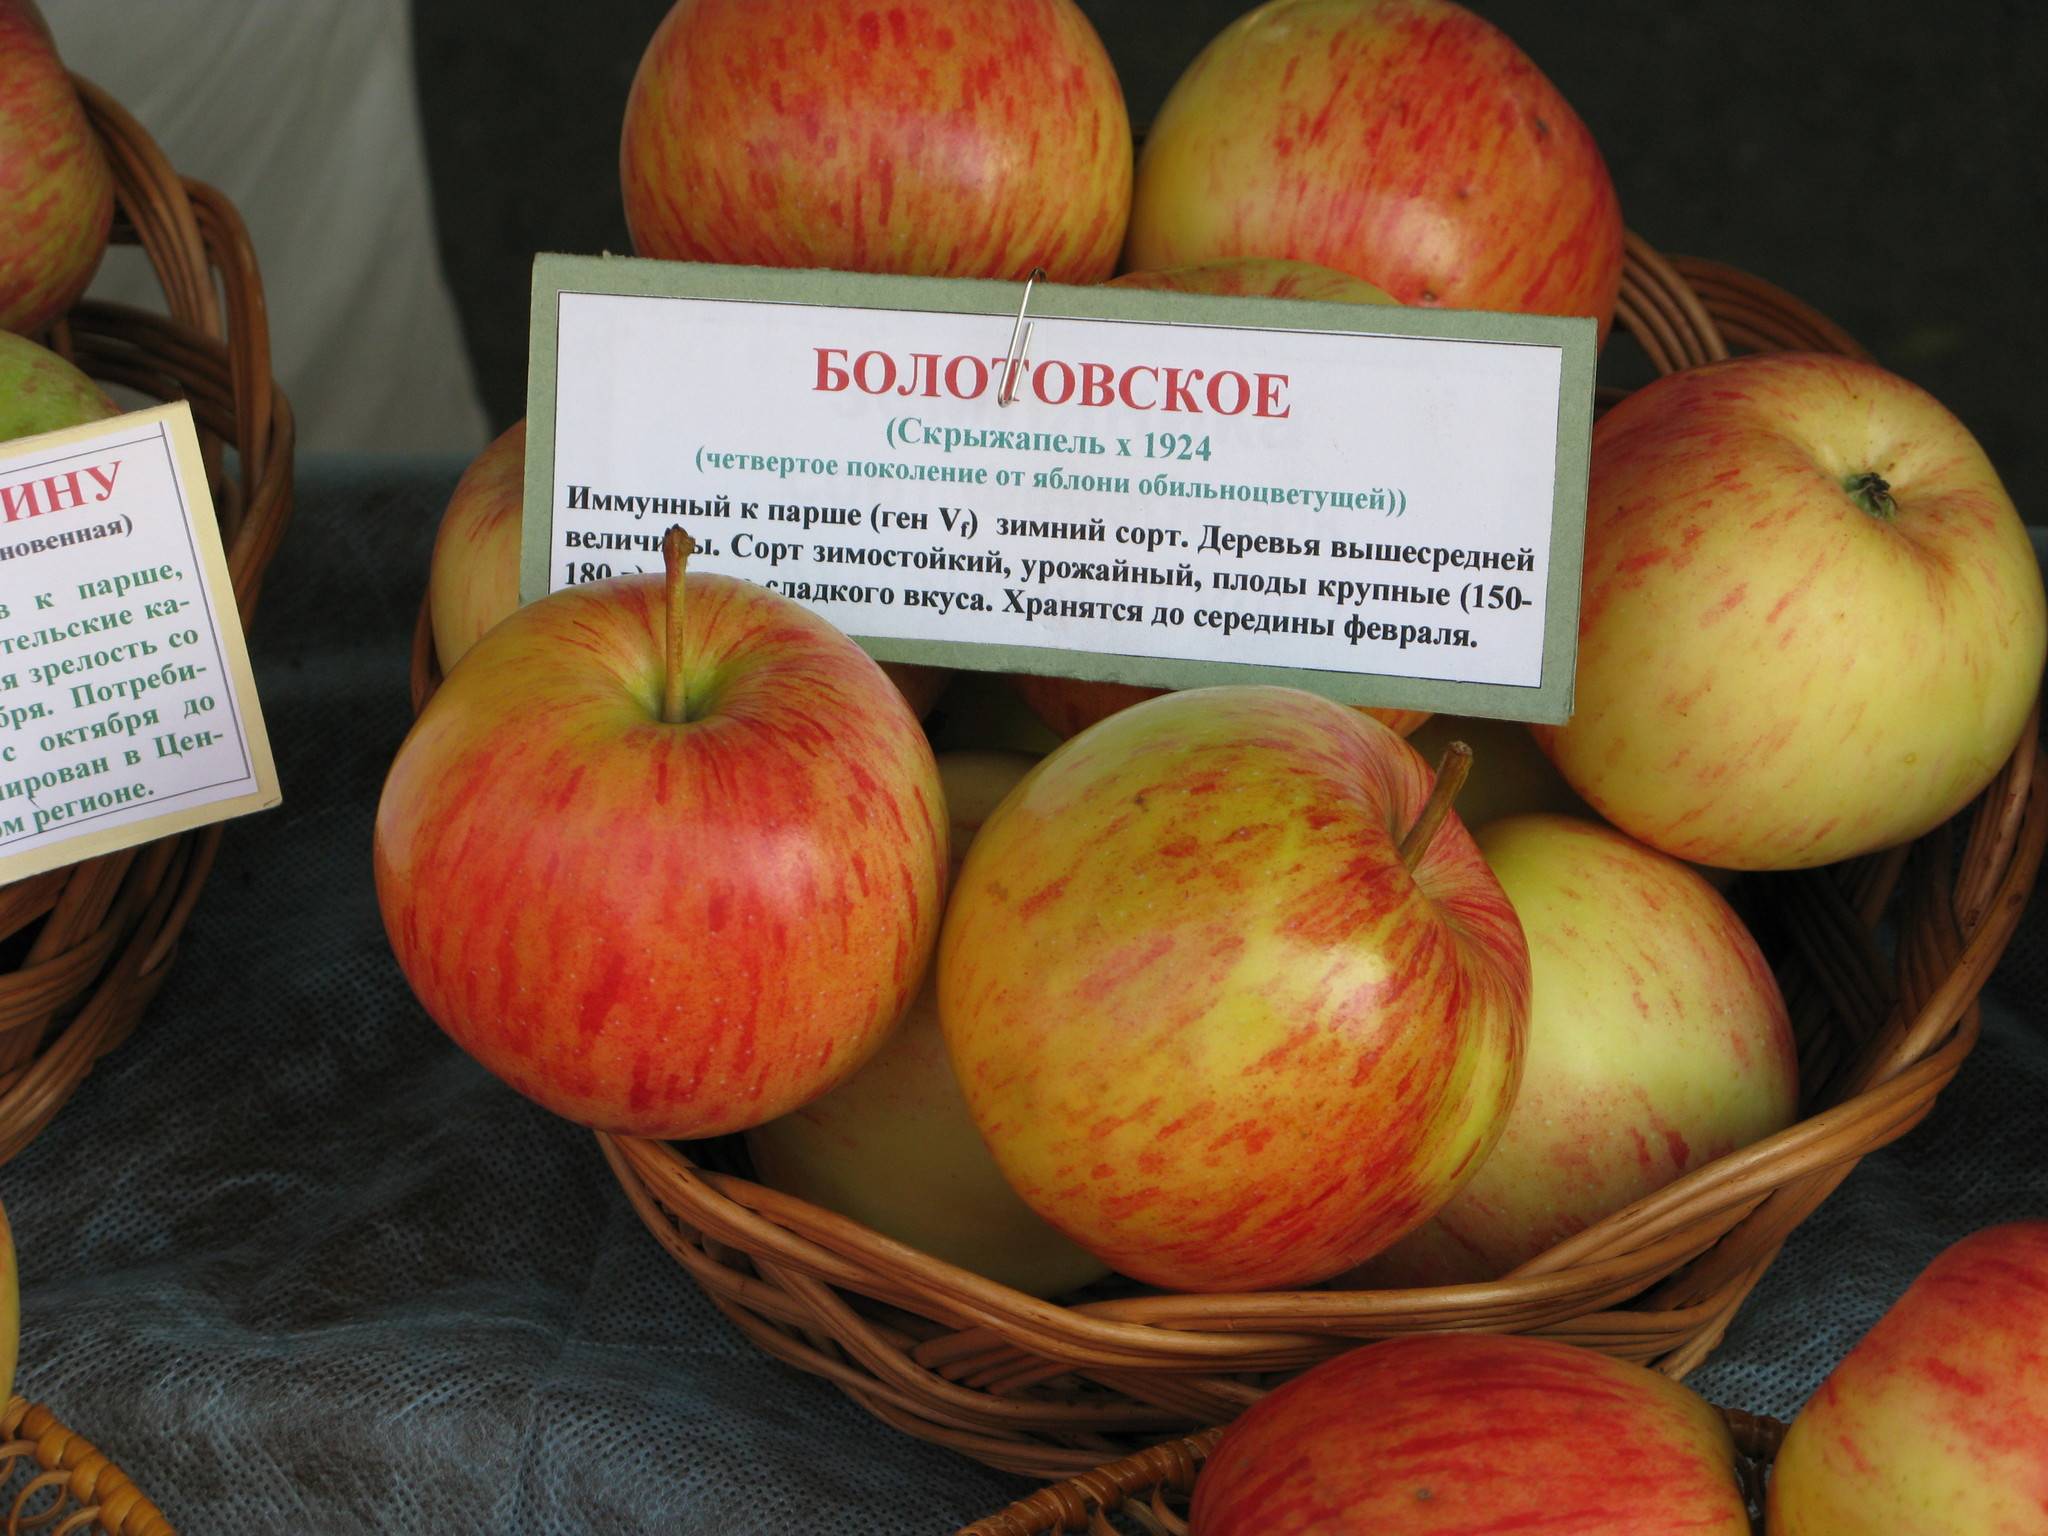 Описание сорта яблони брянское: фото яблок, важные характеристики, урожайность с дерева